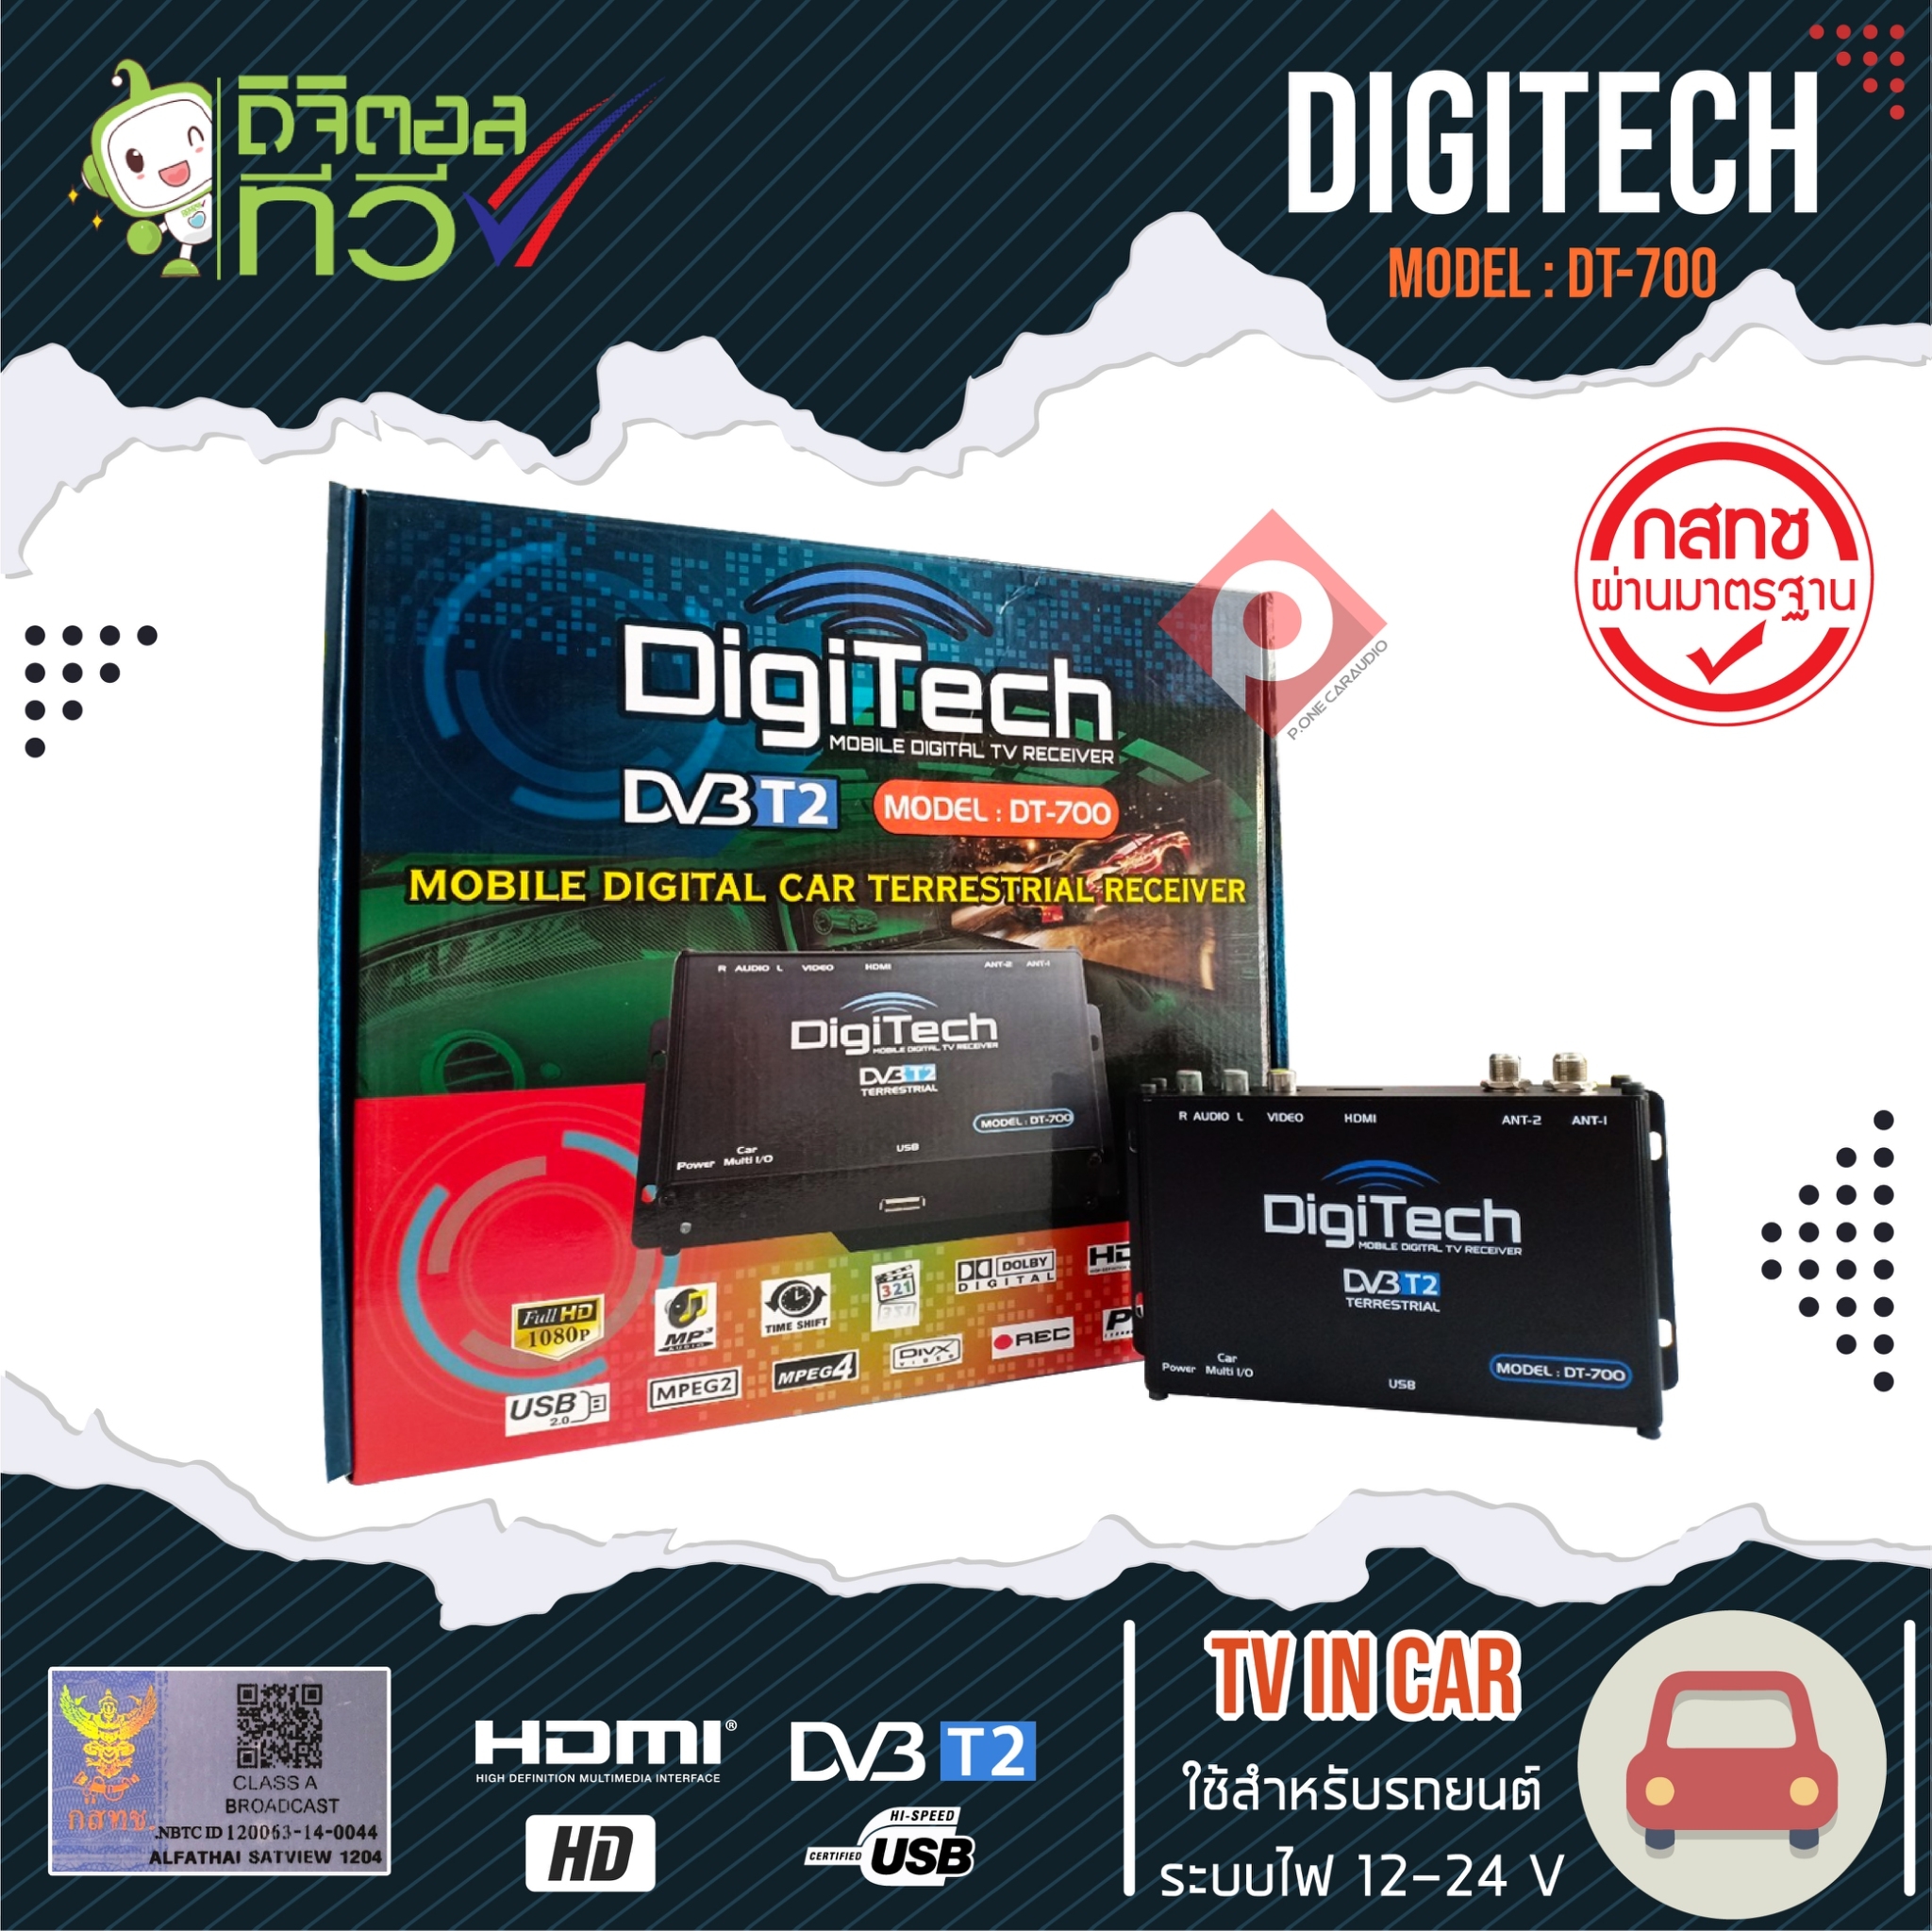 กล่องดิจิตอลทีวี DIGITECH DT-700 เสาสัญญาณทีวี 2 ชุด ราคา 1,950 บาท